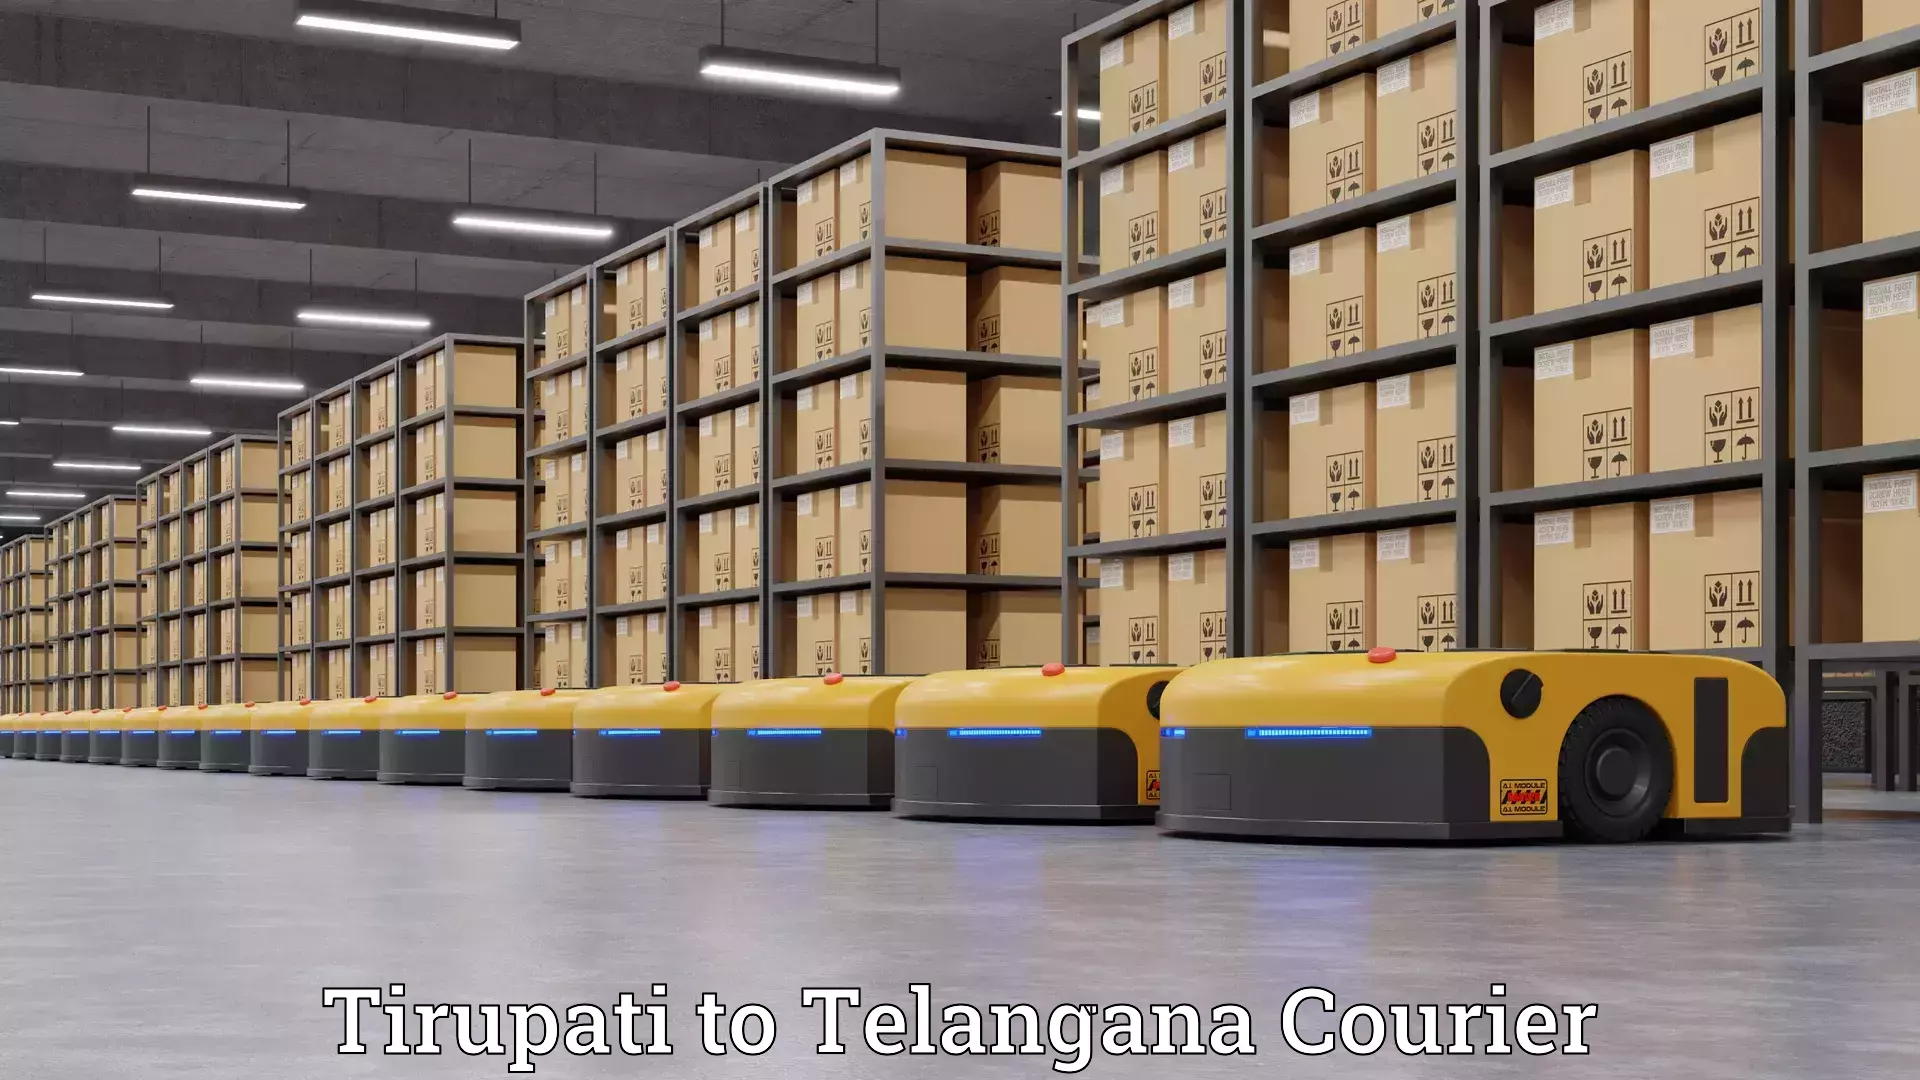 Furniture transport solutions Tirupati to Telangana